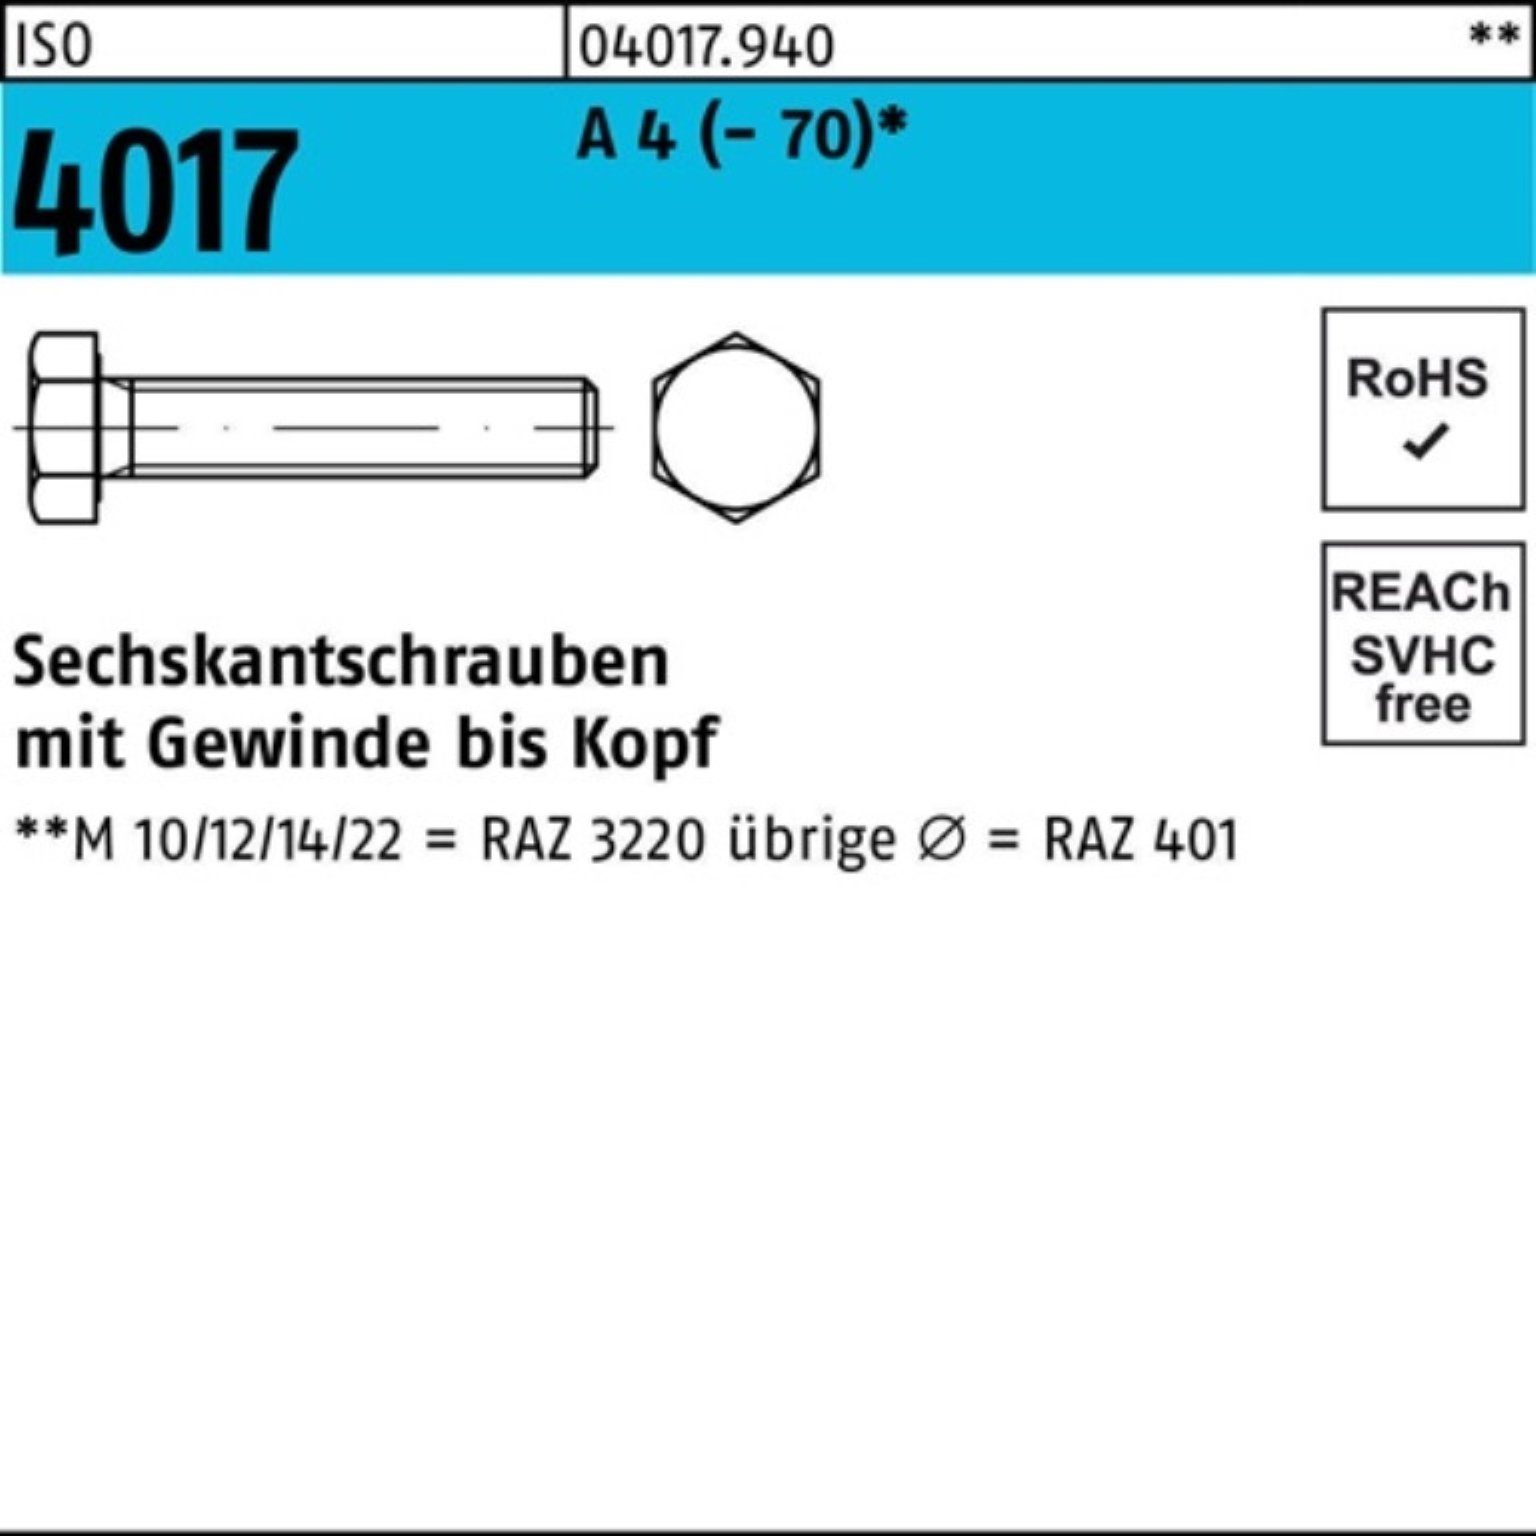 Bufab Sechskantschraube 100er Pack Sechskantschraube ISO 4017 VG M6x 75 A 4 (70) 50 Stück I